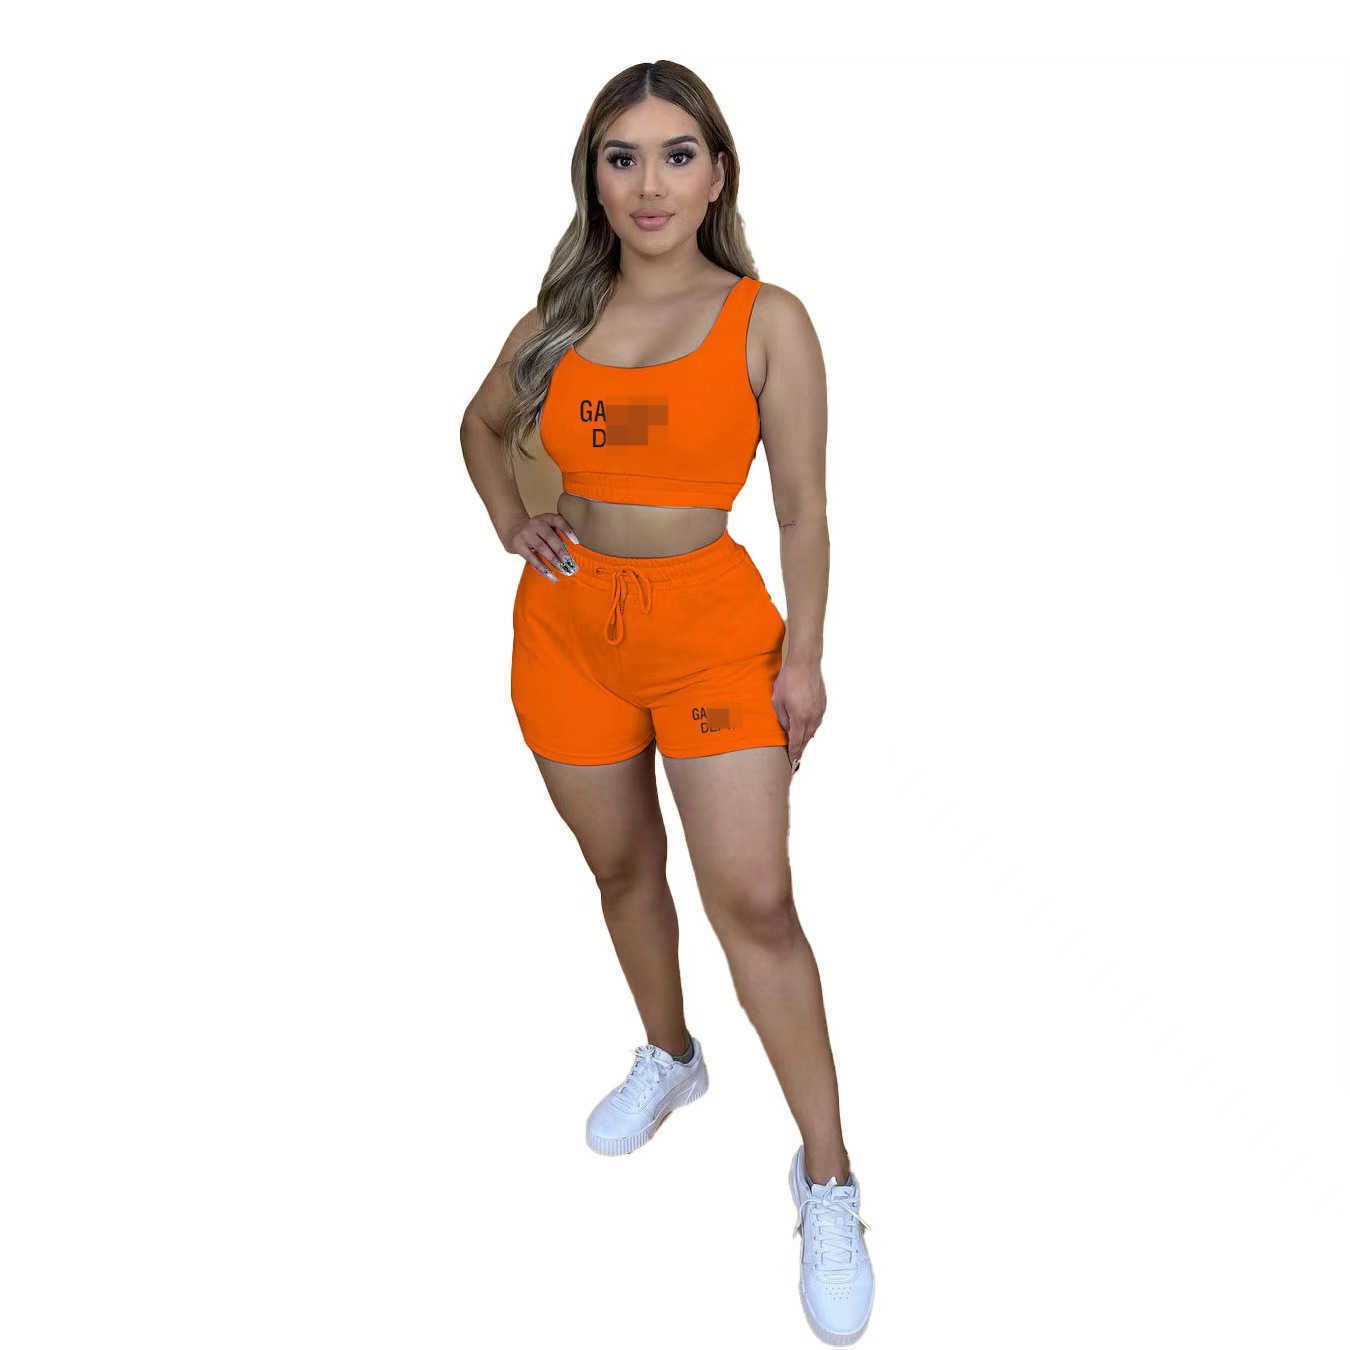 orange5